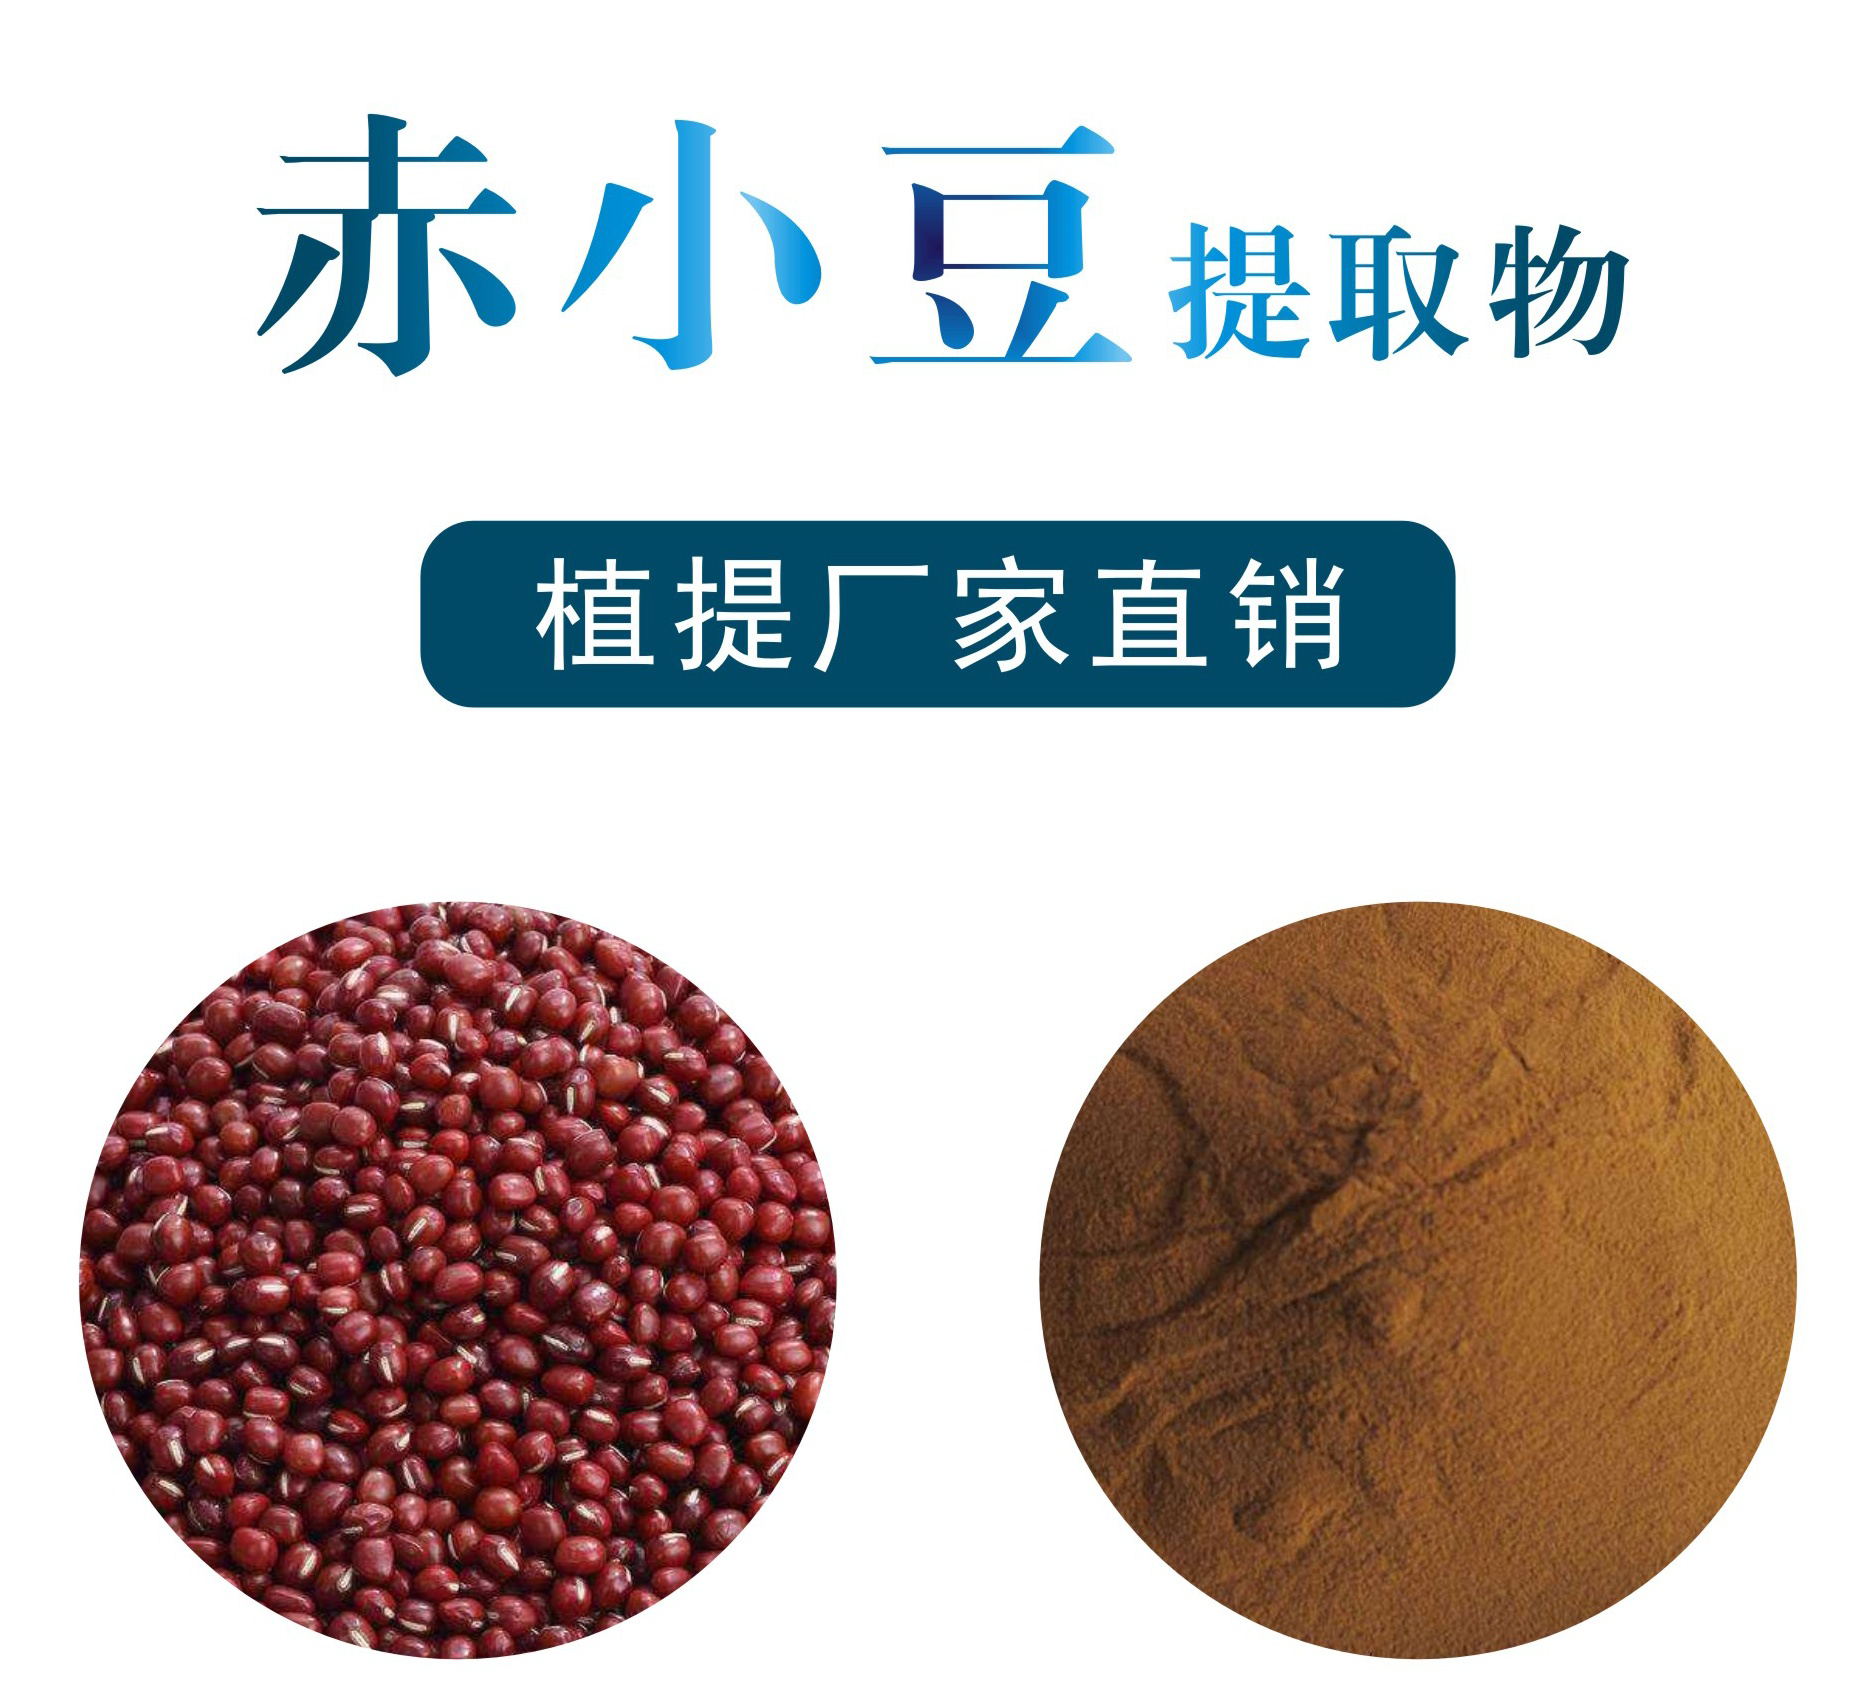 赤小豆提取物,Semen phaseoli extract